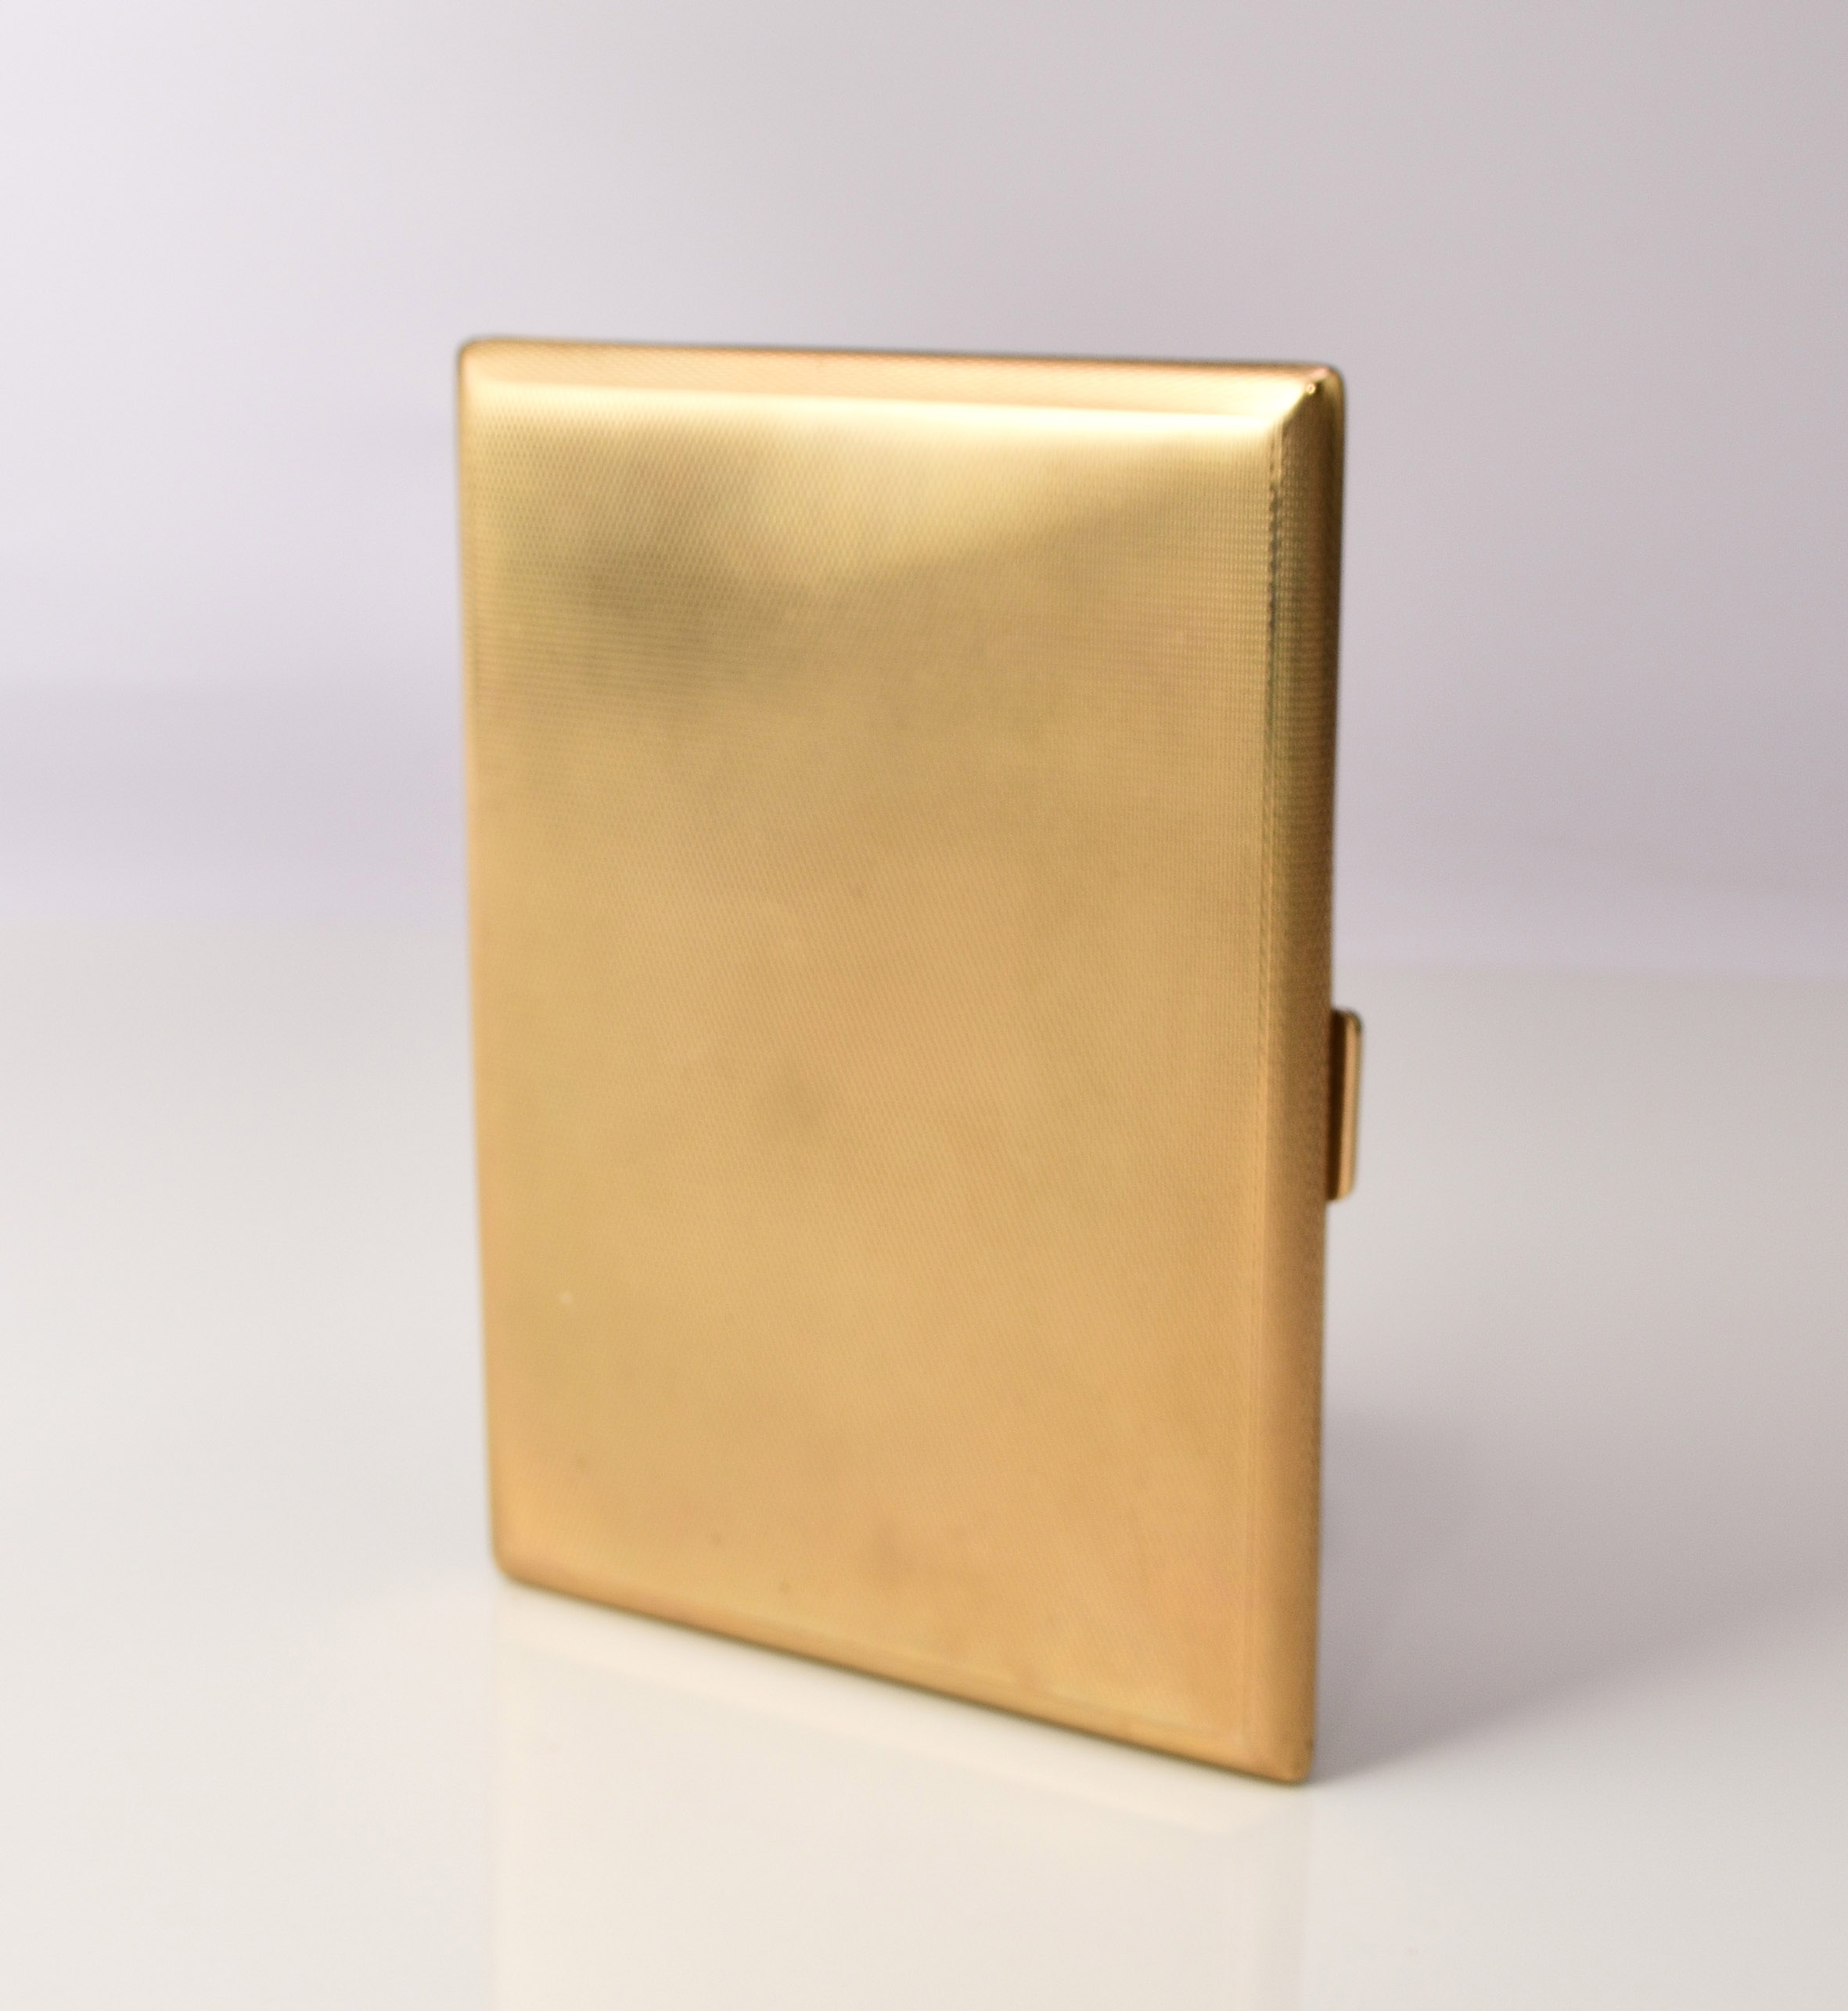 Gold cigarette case